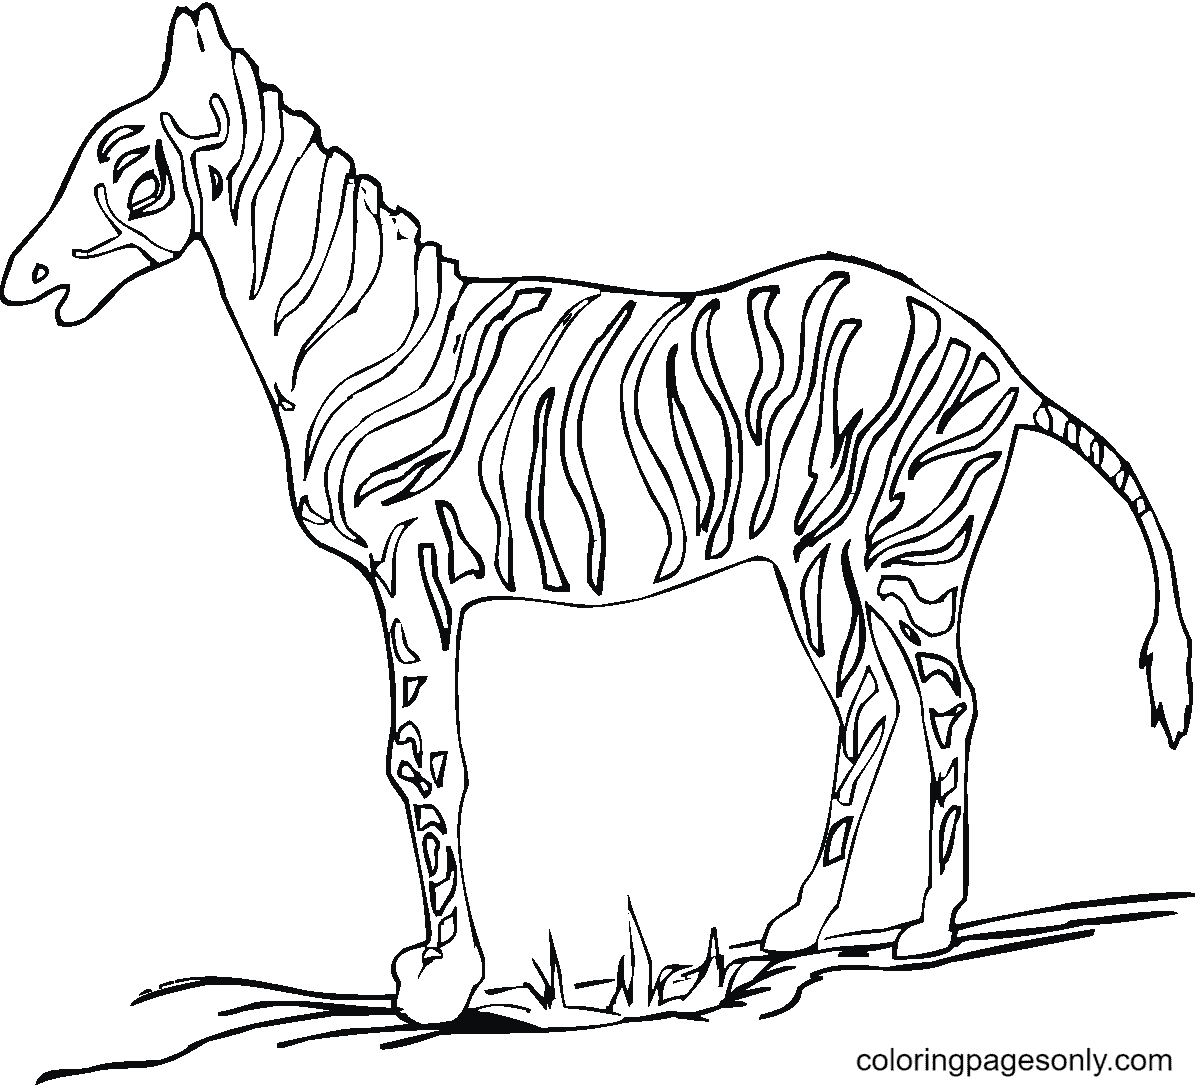 Una cebra sobre la hierba de Zebra